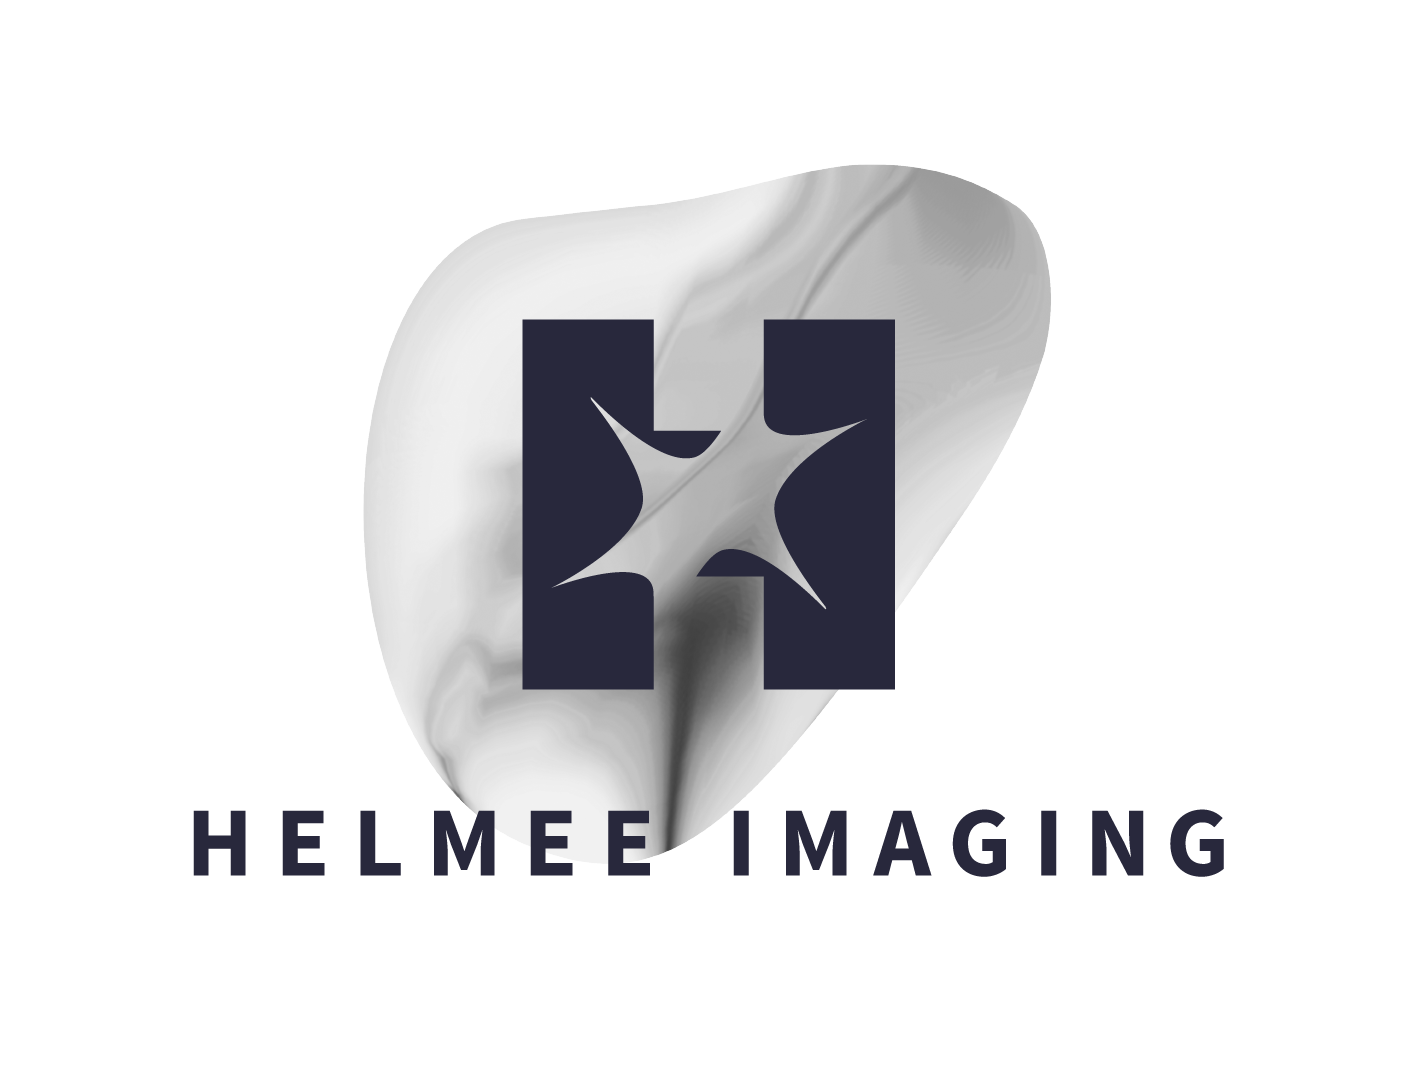 Helmee Imaging Oy